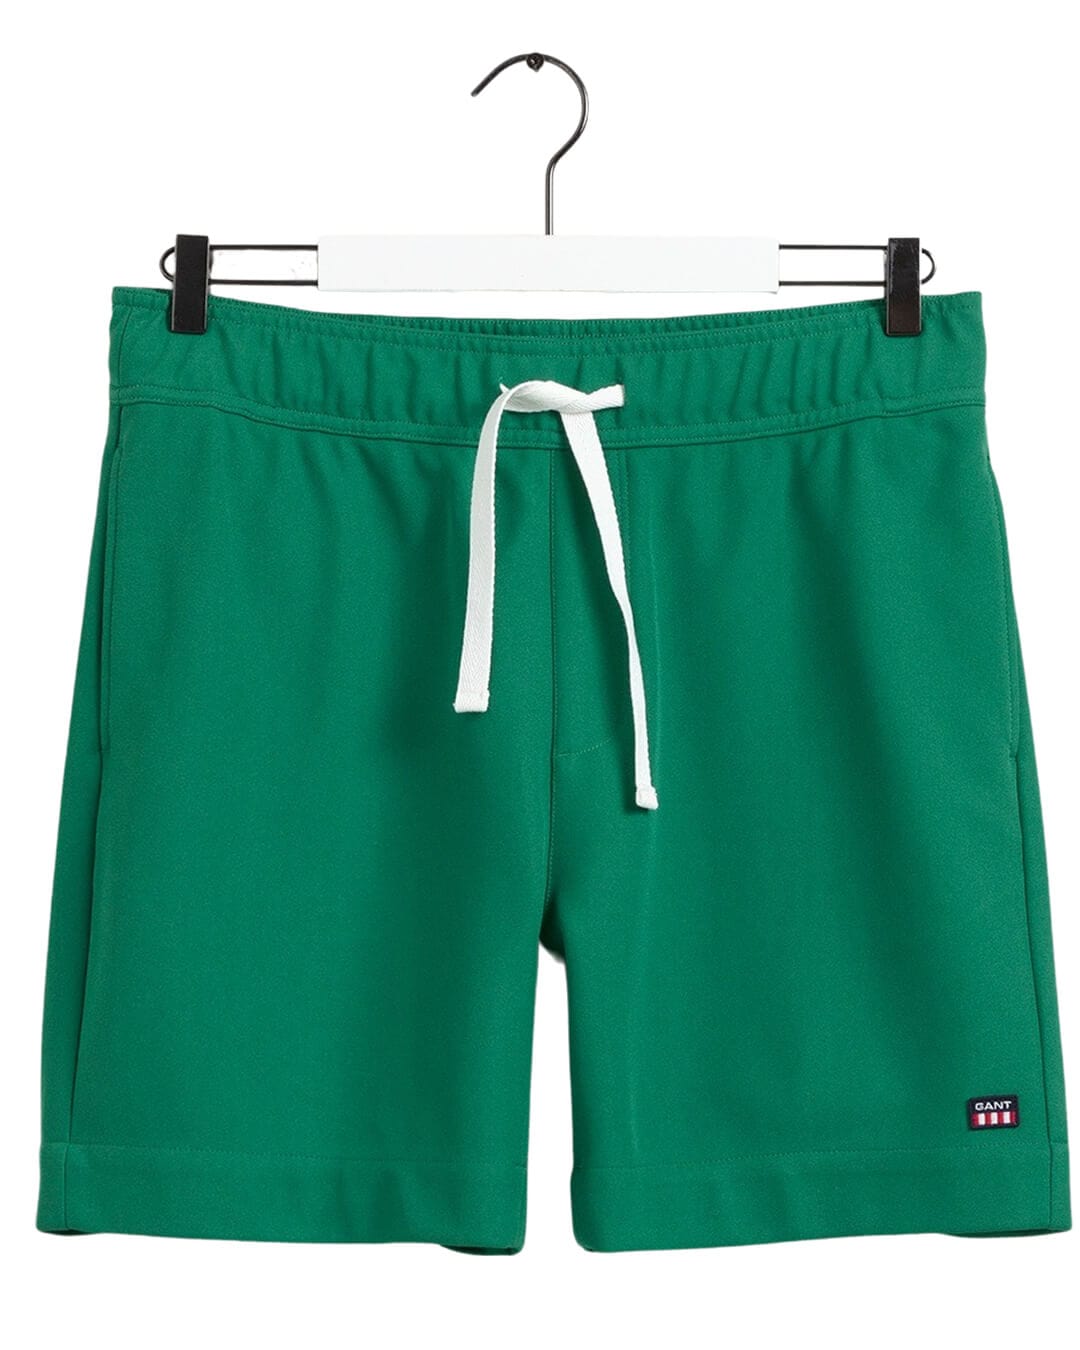 Gant Shorts Gant Retro Shield Drawstring Green Shorts